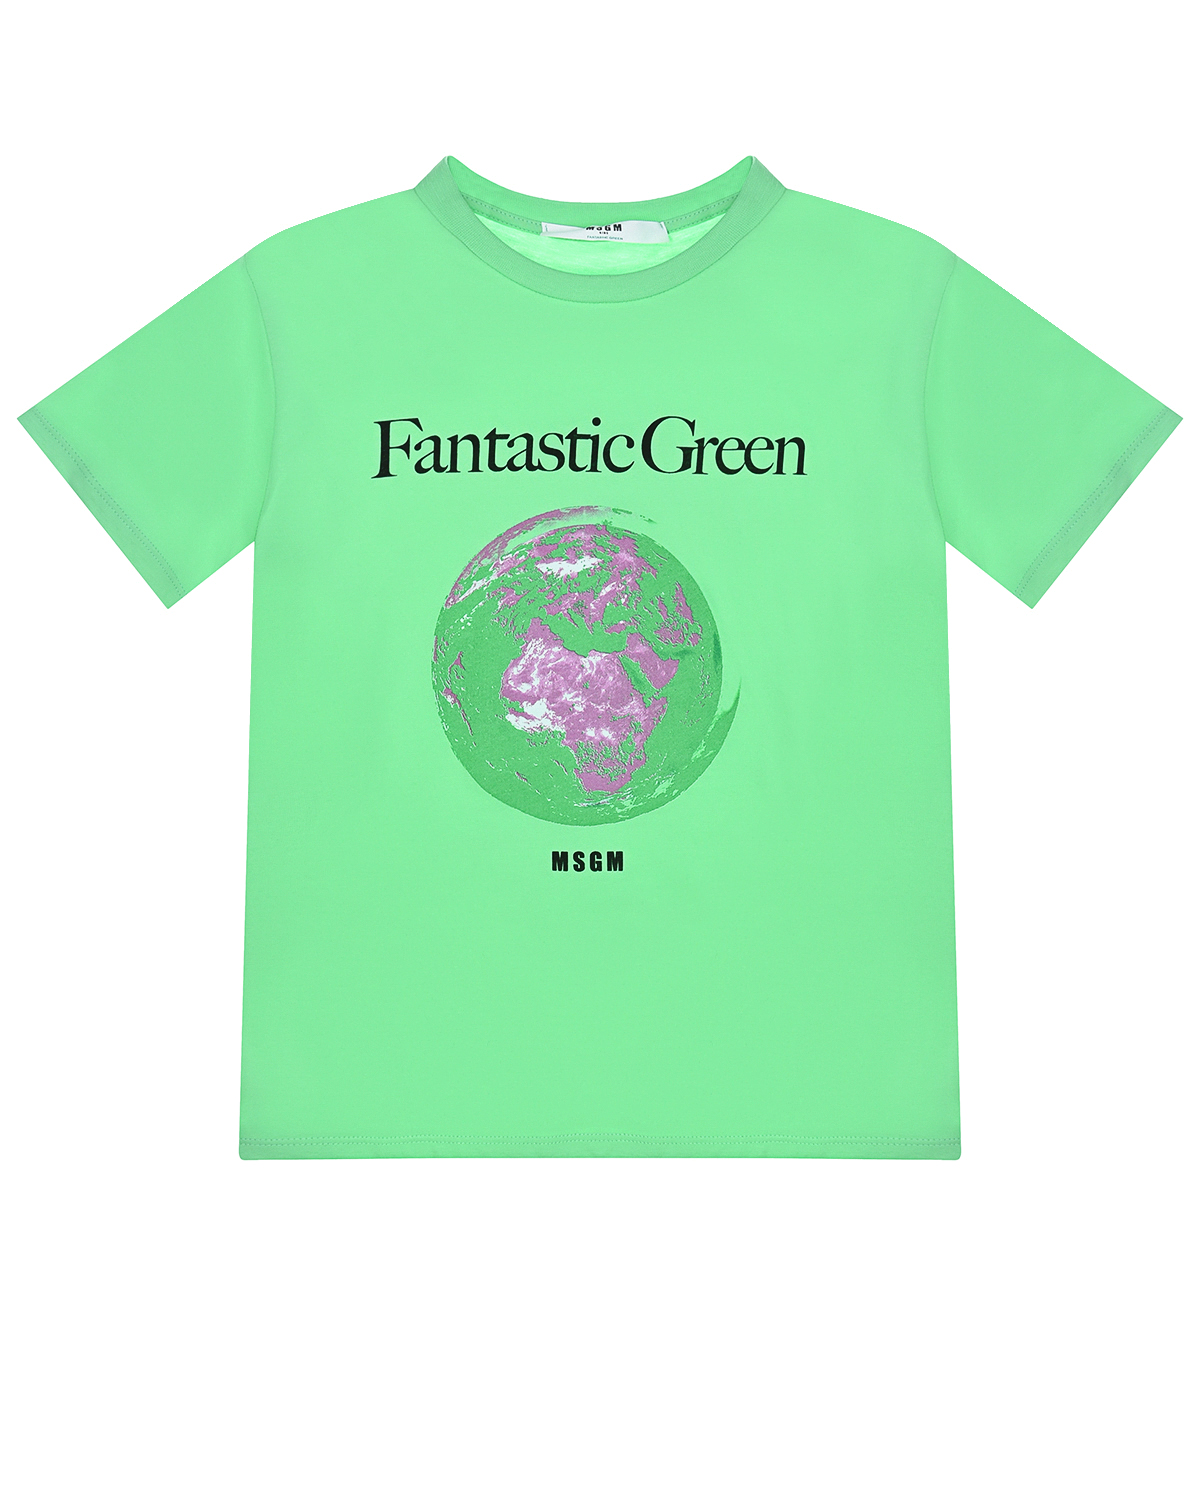 Зеленая футболка с принтом "Fantastic Green" MSGM детская, размер 140, цвет зеленый - фото 1